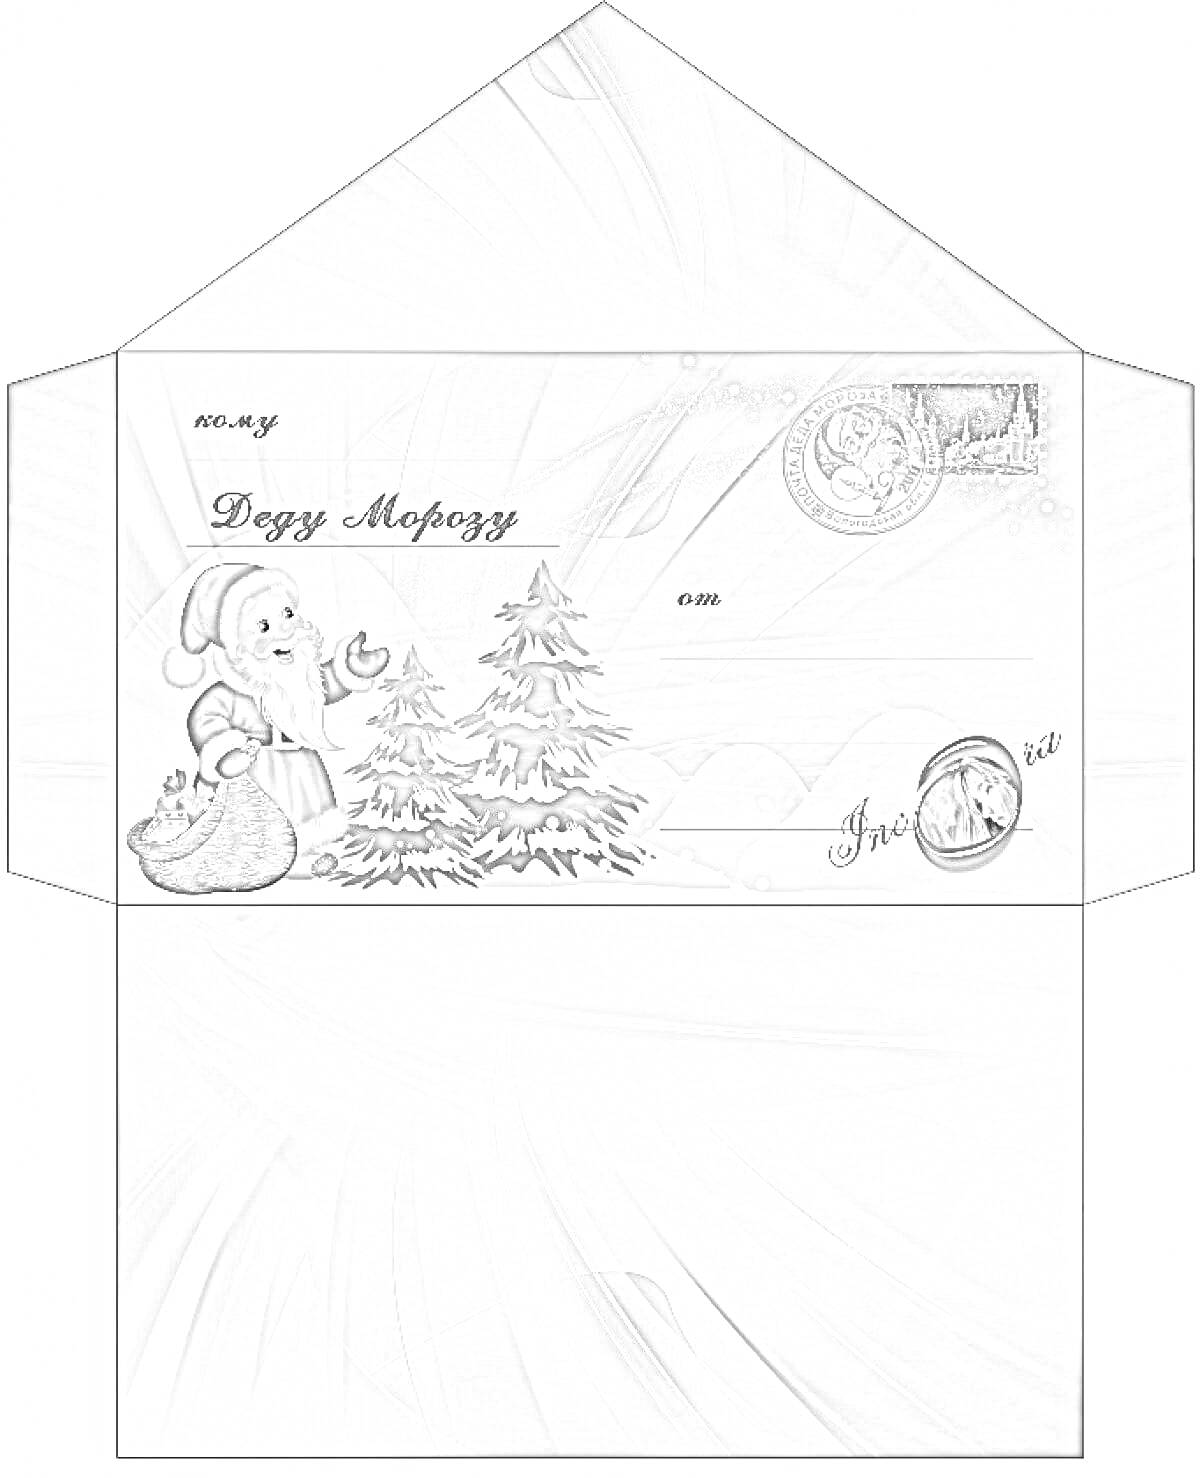 Раскраска Конверт для письма Деду Морозу с изображением Деда Мороза, ёлок, мешка с подарками, зимнего пейзажа и новогодними элементами на синем фоне